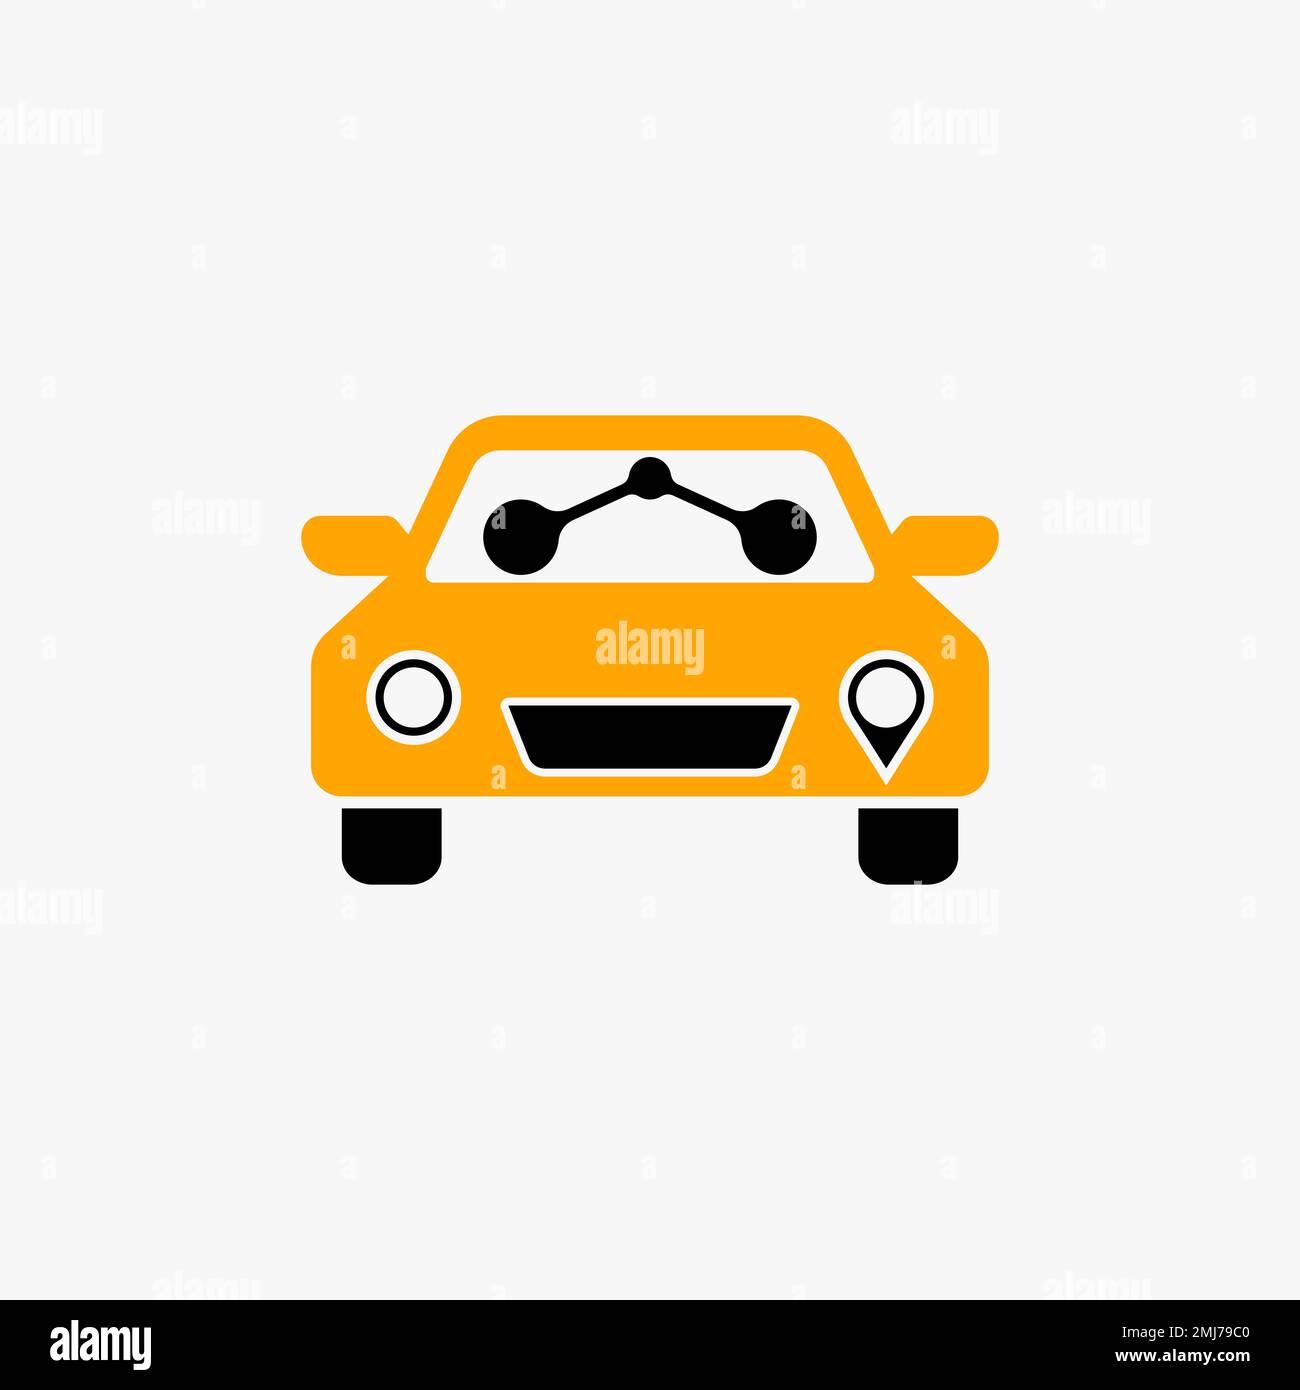 Simple y único frente mini pequeño coche de taxi con dos pasajeros imagen icono gráfico logo diseño concepto abstracto vector stock transporte o móvil Ilustración del Vector